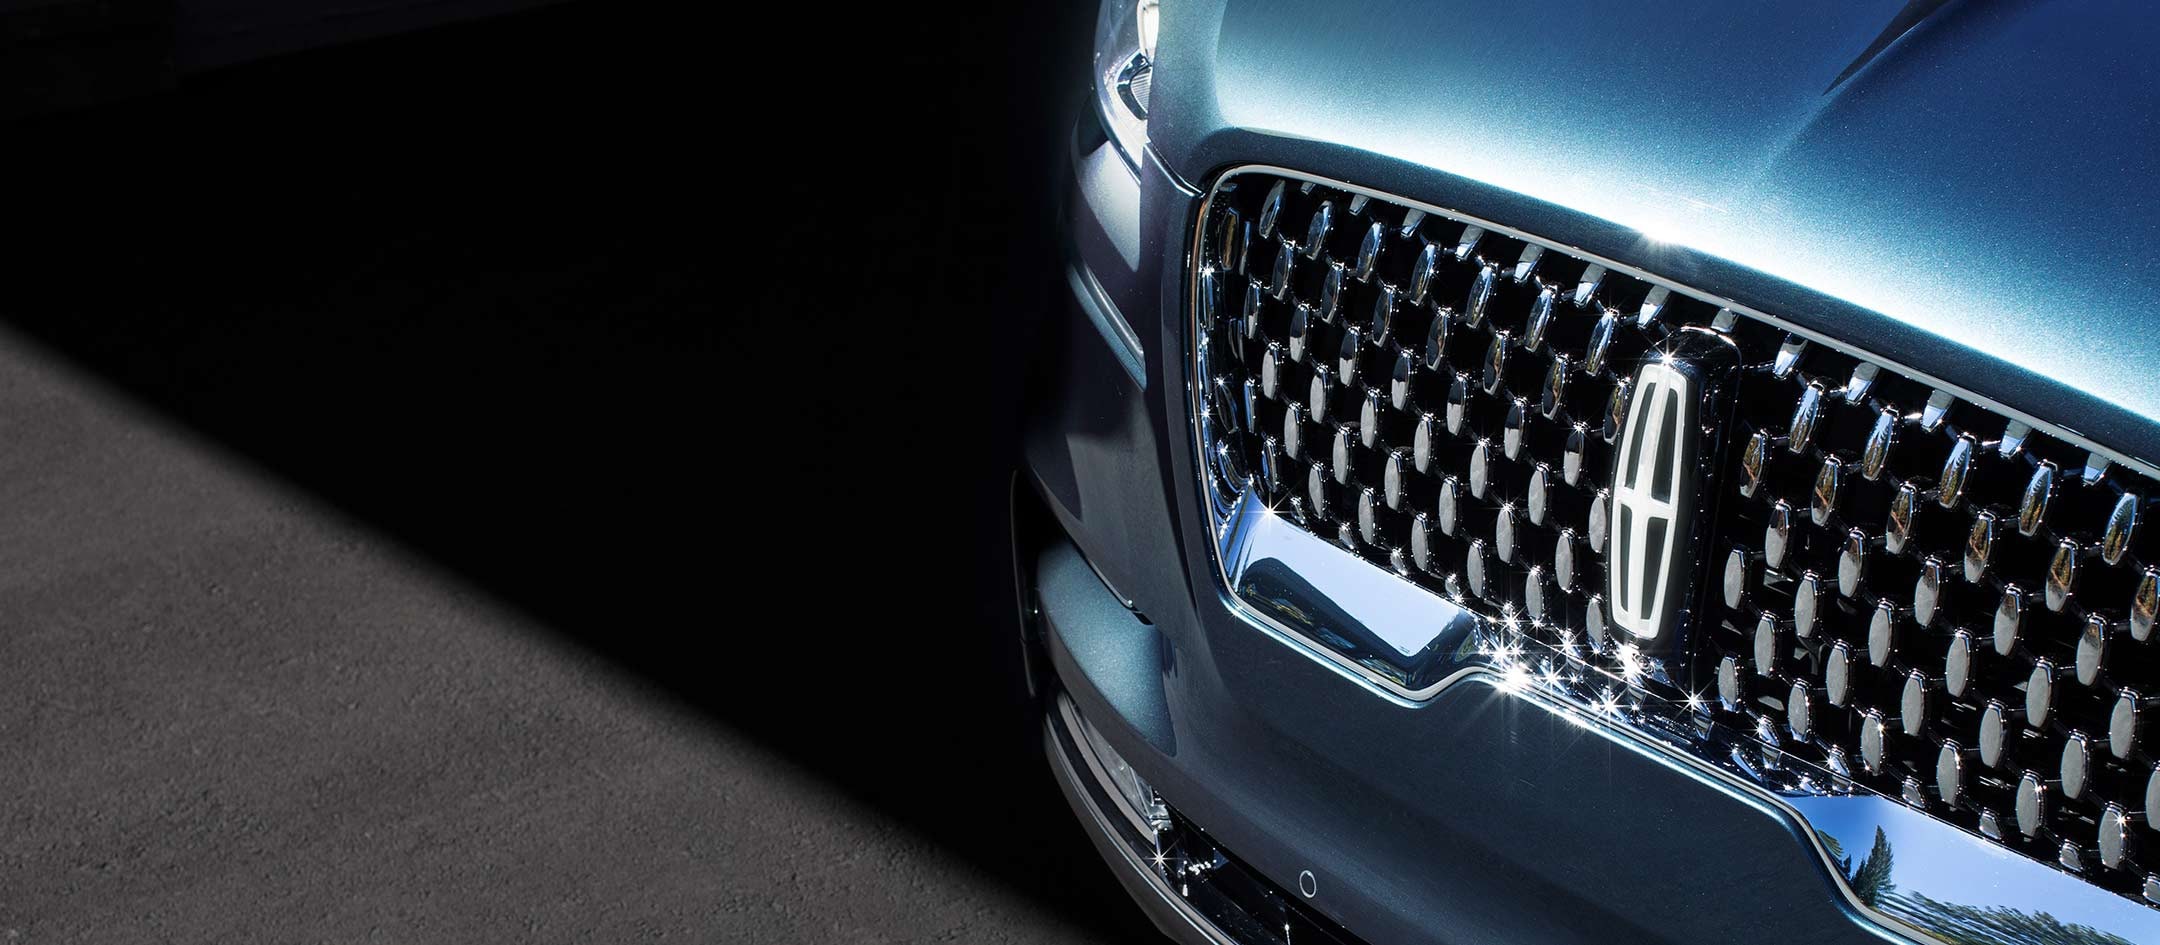 La característica parrilla Lincoln Black Label con la estrella de Lincoln iluminada disponible exhibe un diseño impactante en el frente